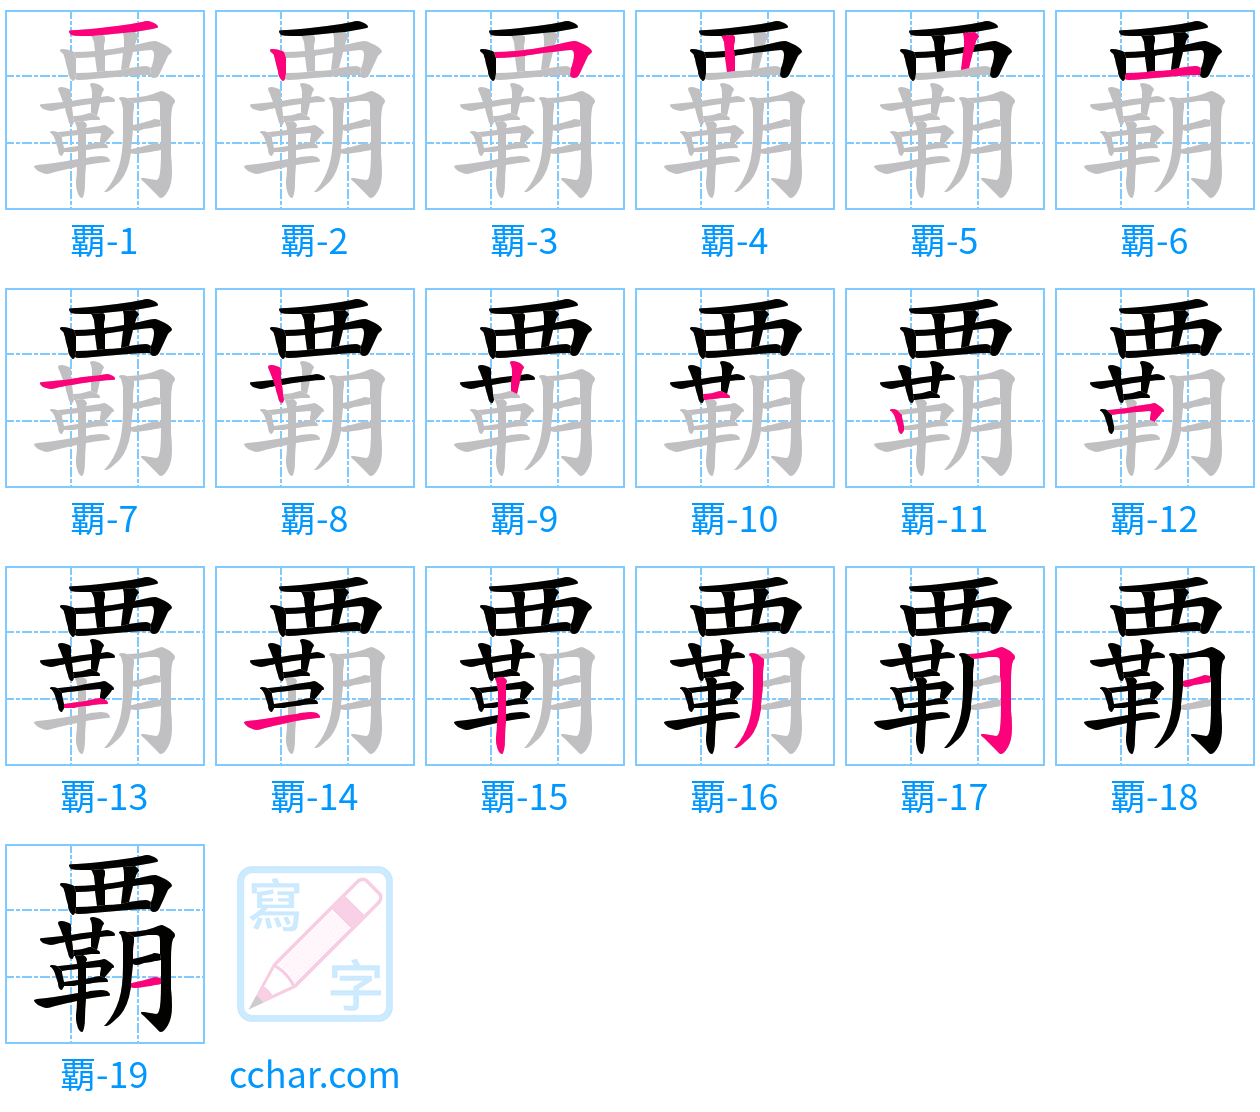 覇 stroke order step-by-step diagram